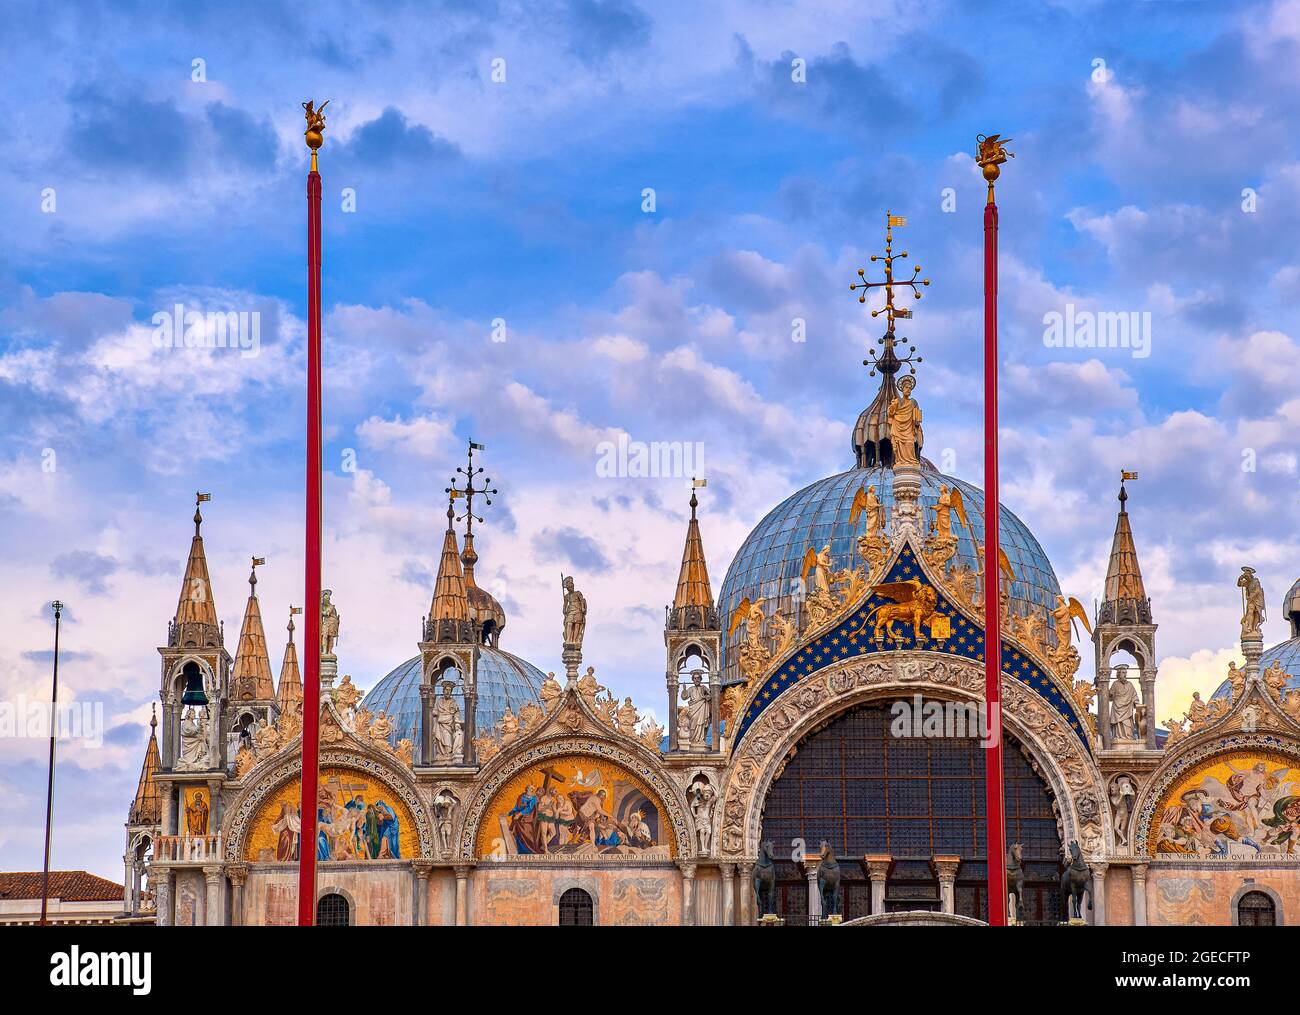 Nahaufnahme der Hauptfassade der Markukathedrale in Venedig. Italien. UNESCO-Weltkulturerbe, blauer Himmel, Wolke, Dekorationen, Mosaiken, Marmorschnitzereien Stockfoto